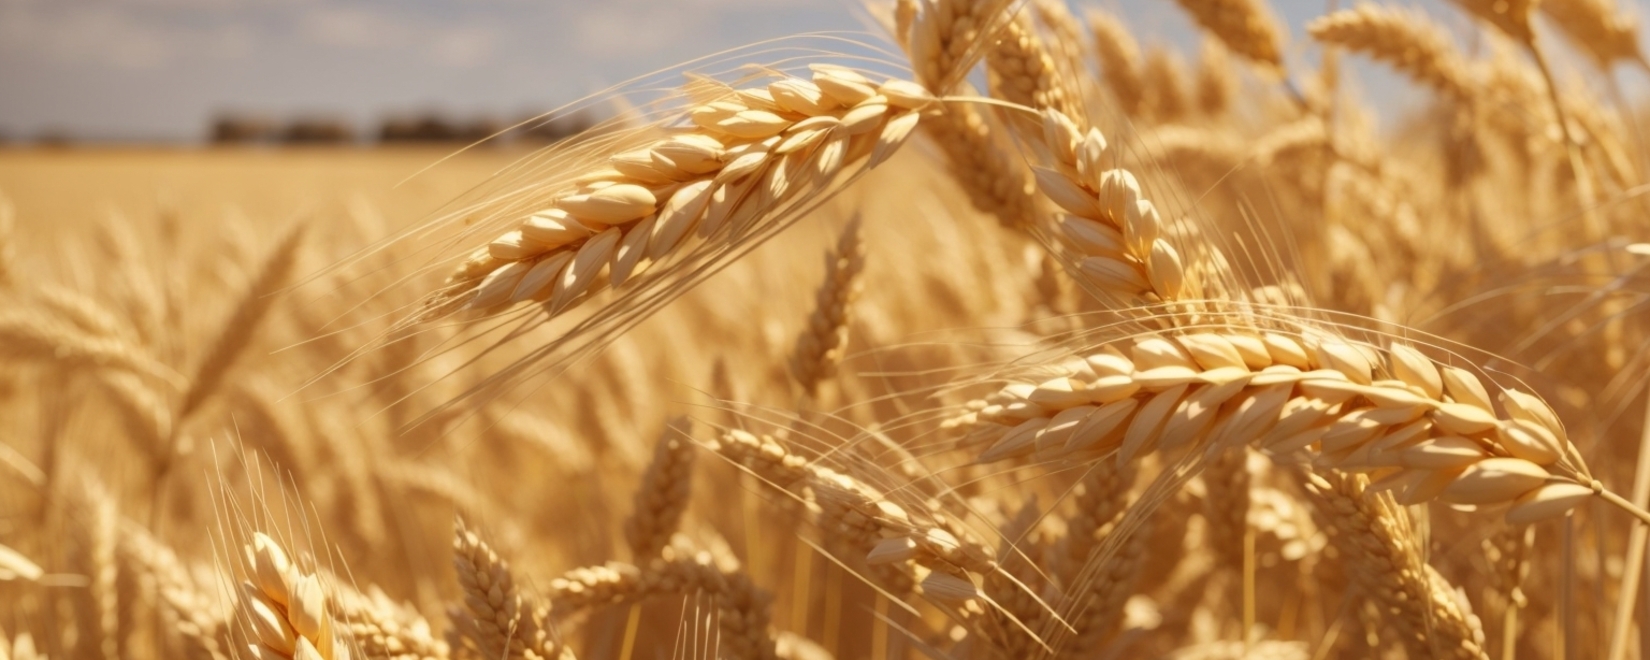 Рекордный рост экспорта твердой пшеницы: Россия увеличила объемы в 13 раз